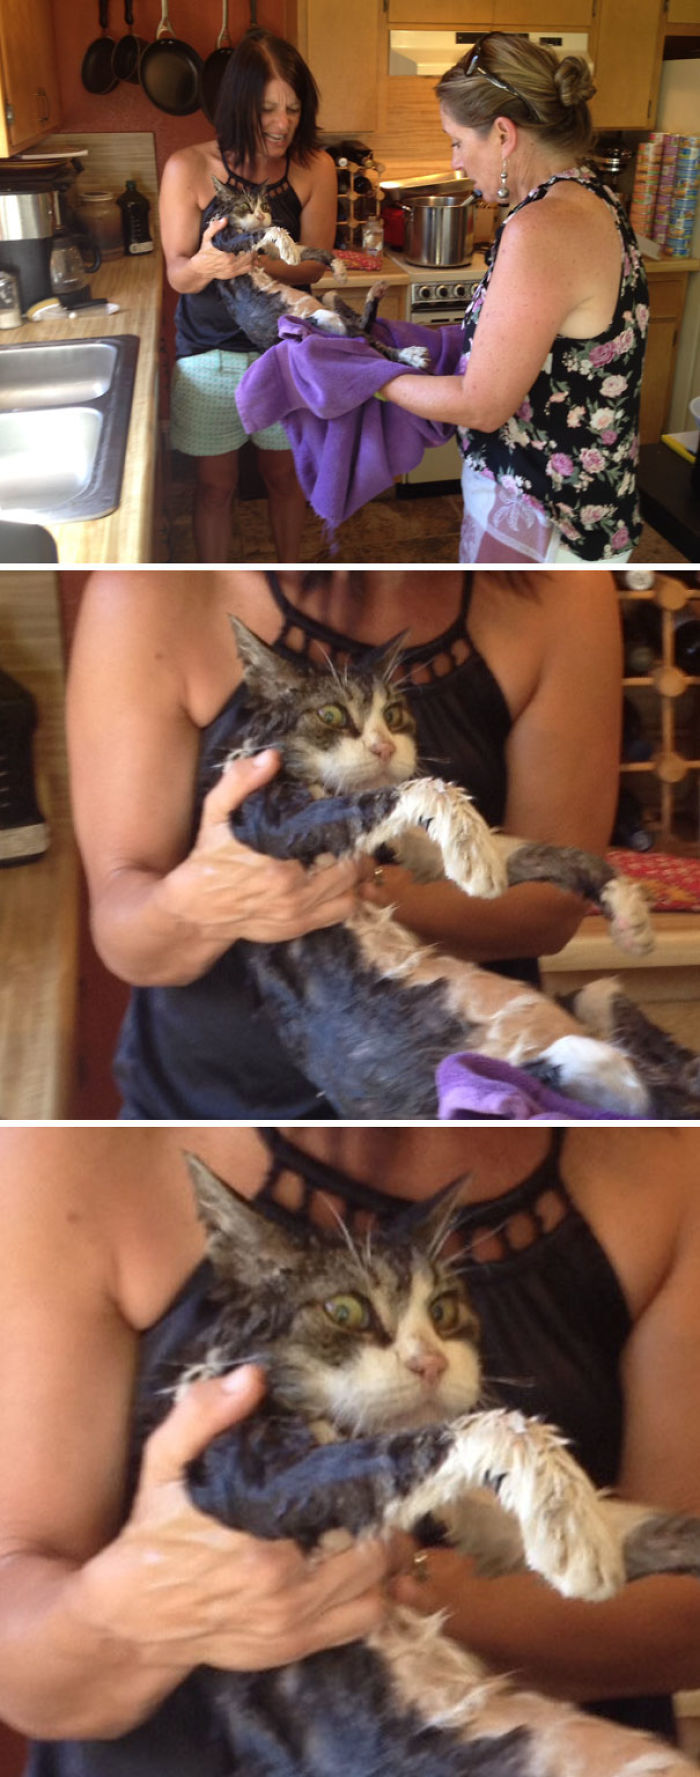 Mi madre y su amiga bebieron demasiado y le dieron un baño al gato